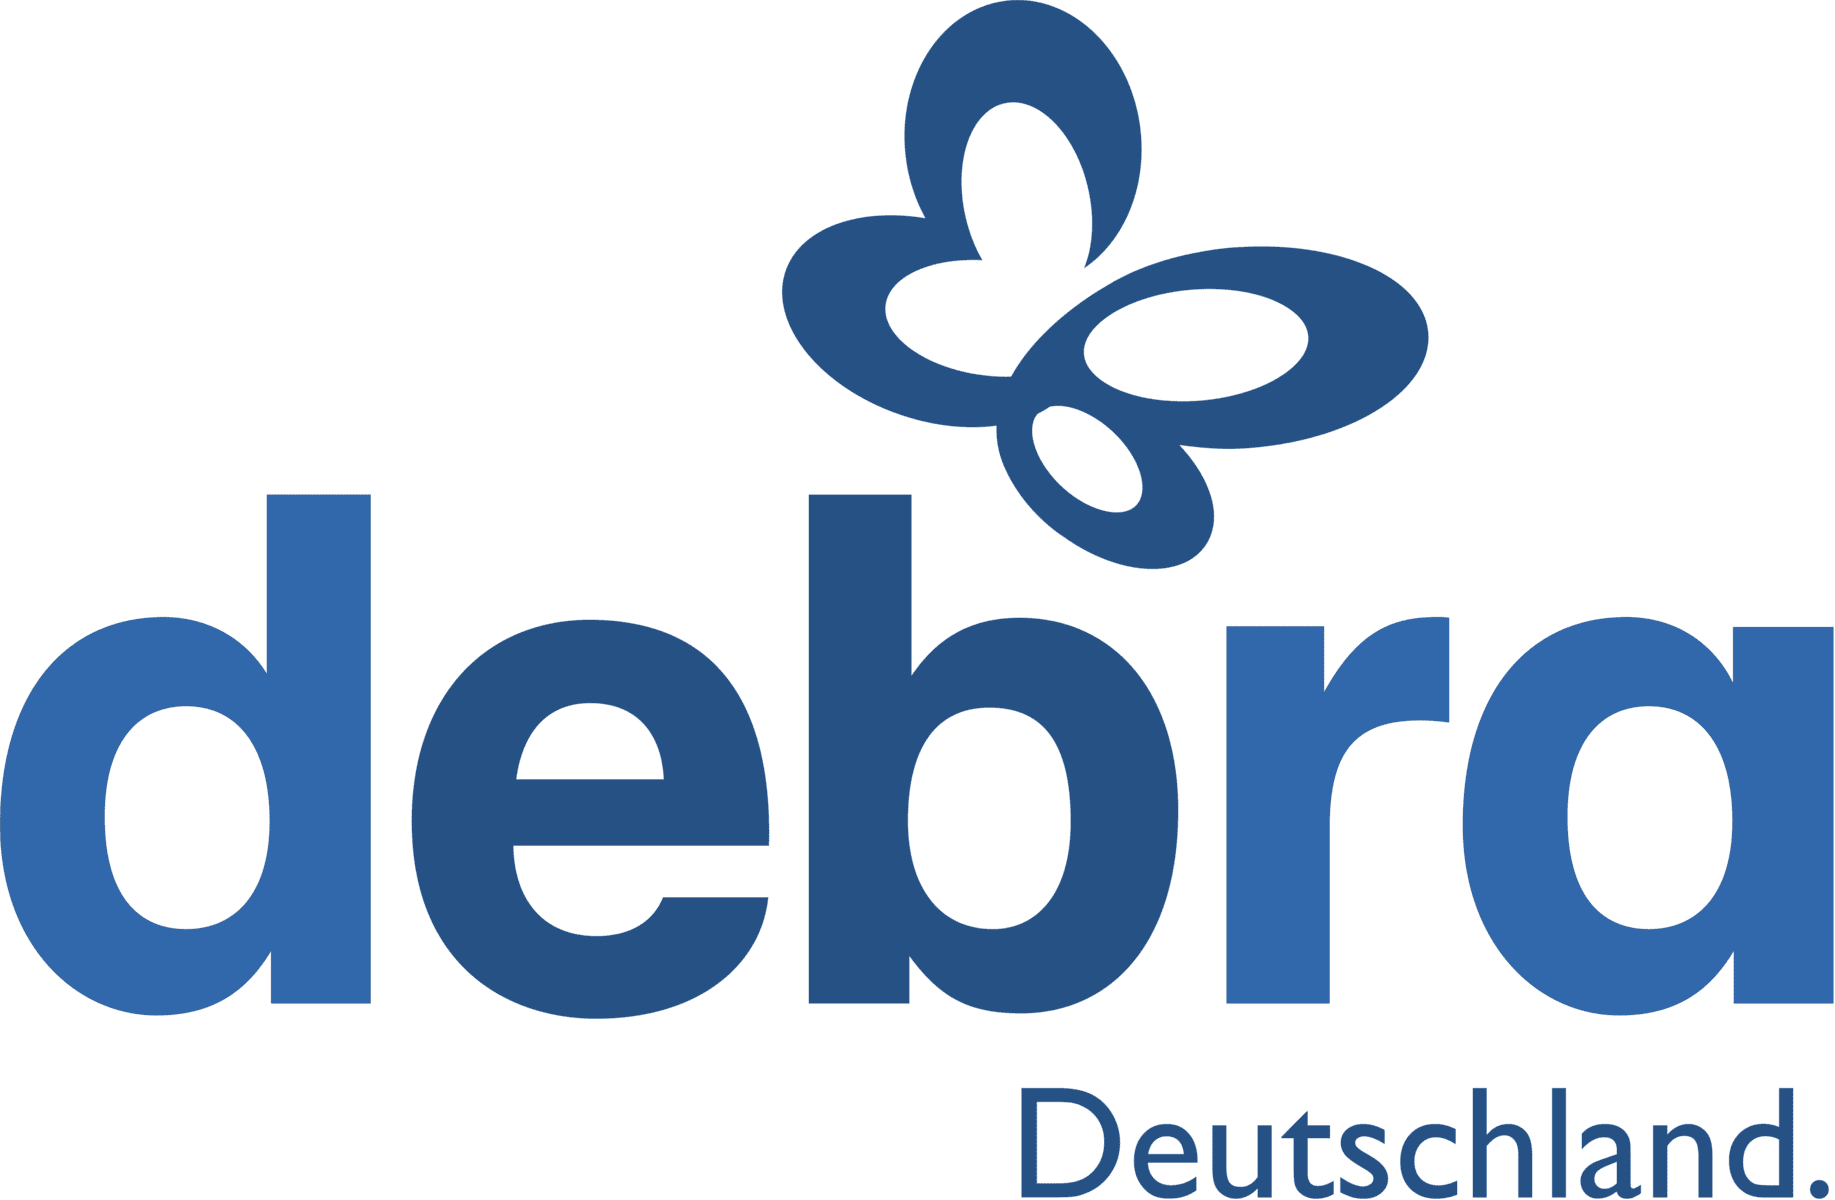 Logo der Interessengemeinschaft Epidermolysis Bullosa e. V. DEBRA Deutschland